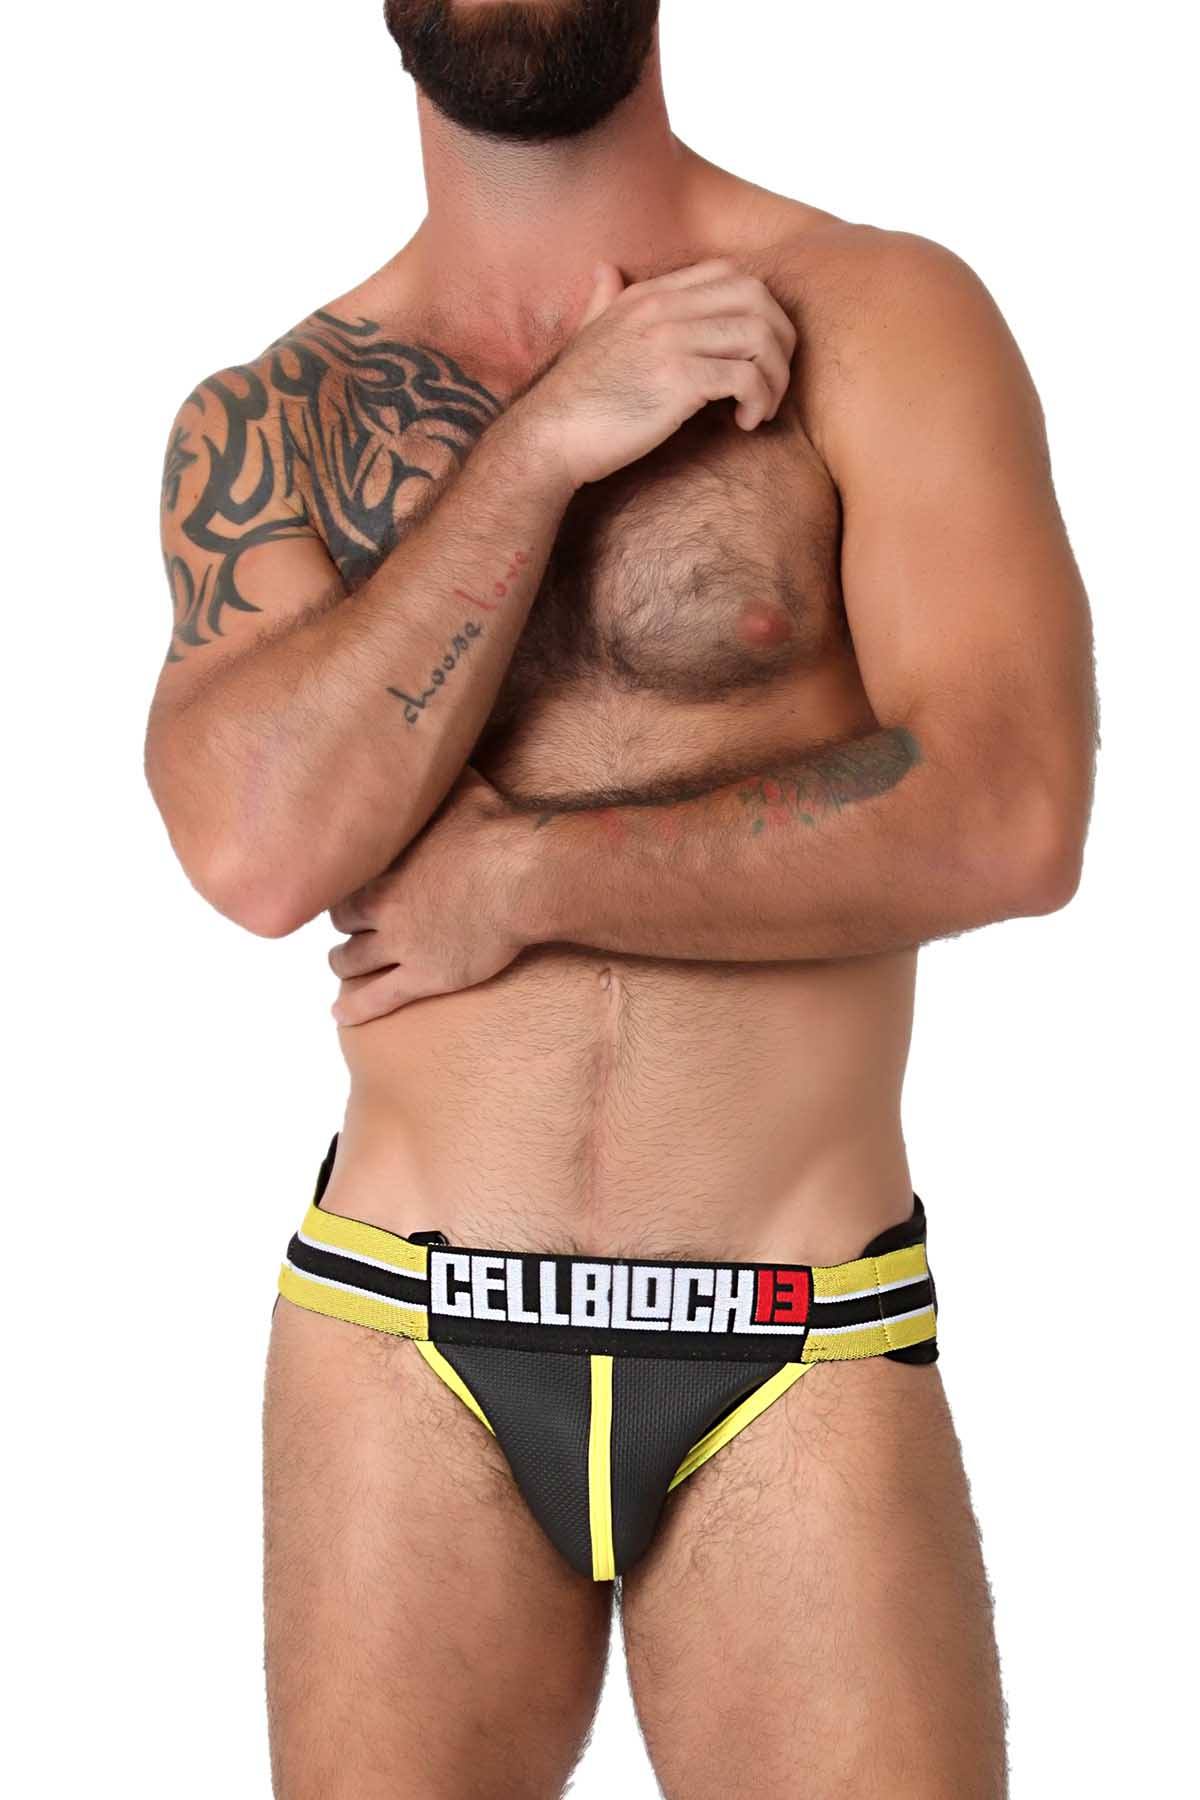 CellBlock 13 Yellow Smuggler Jock Pack